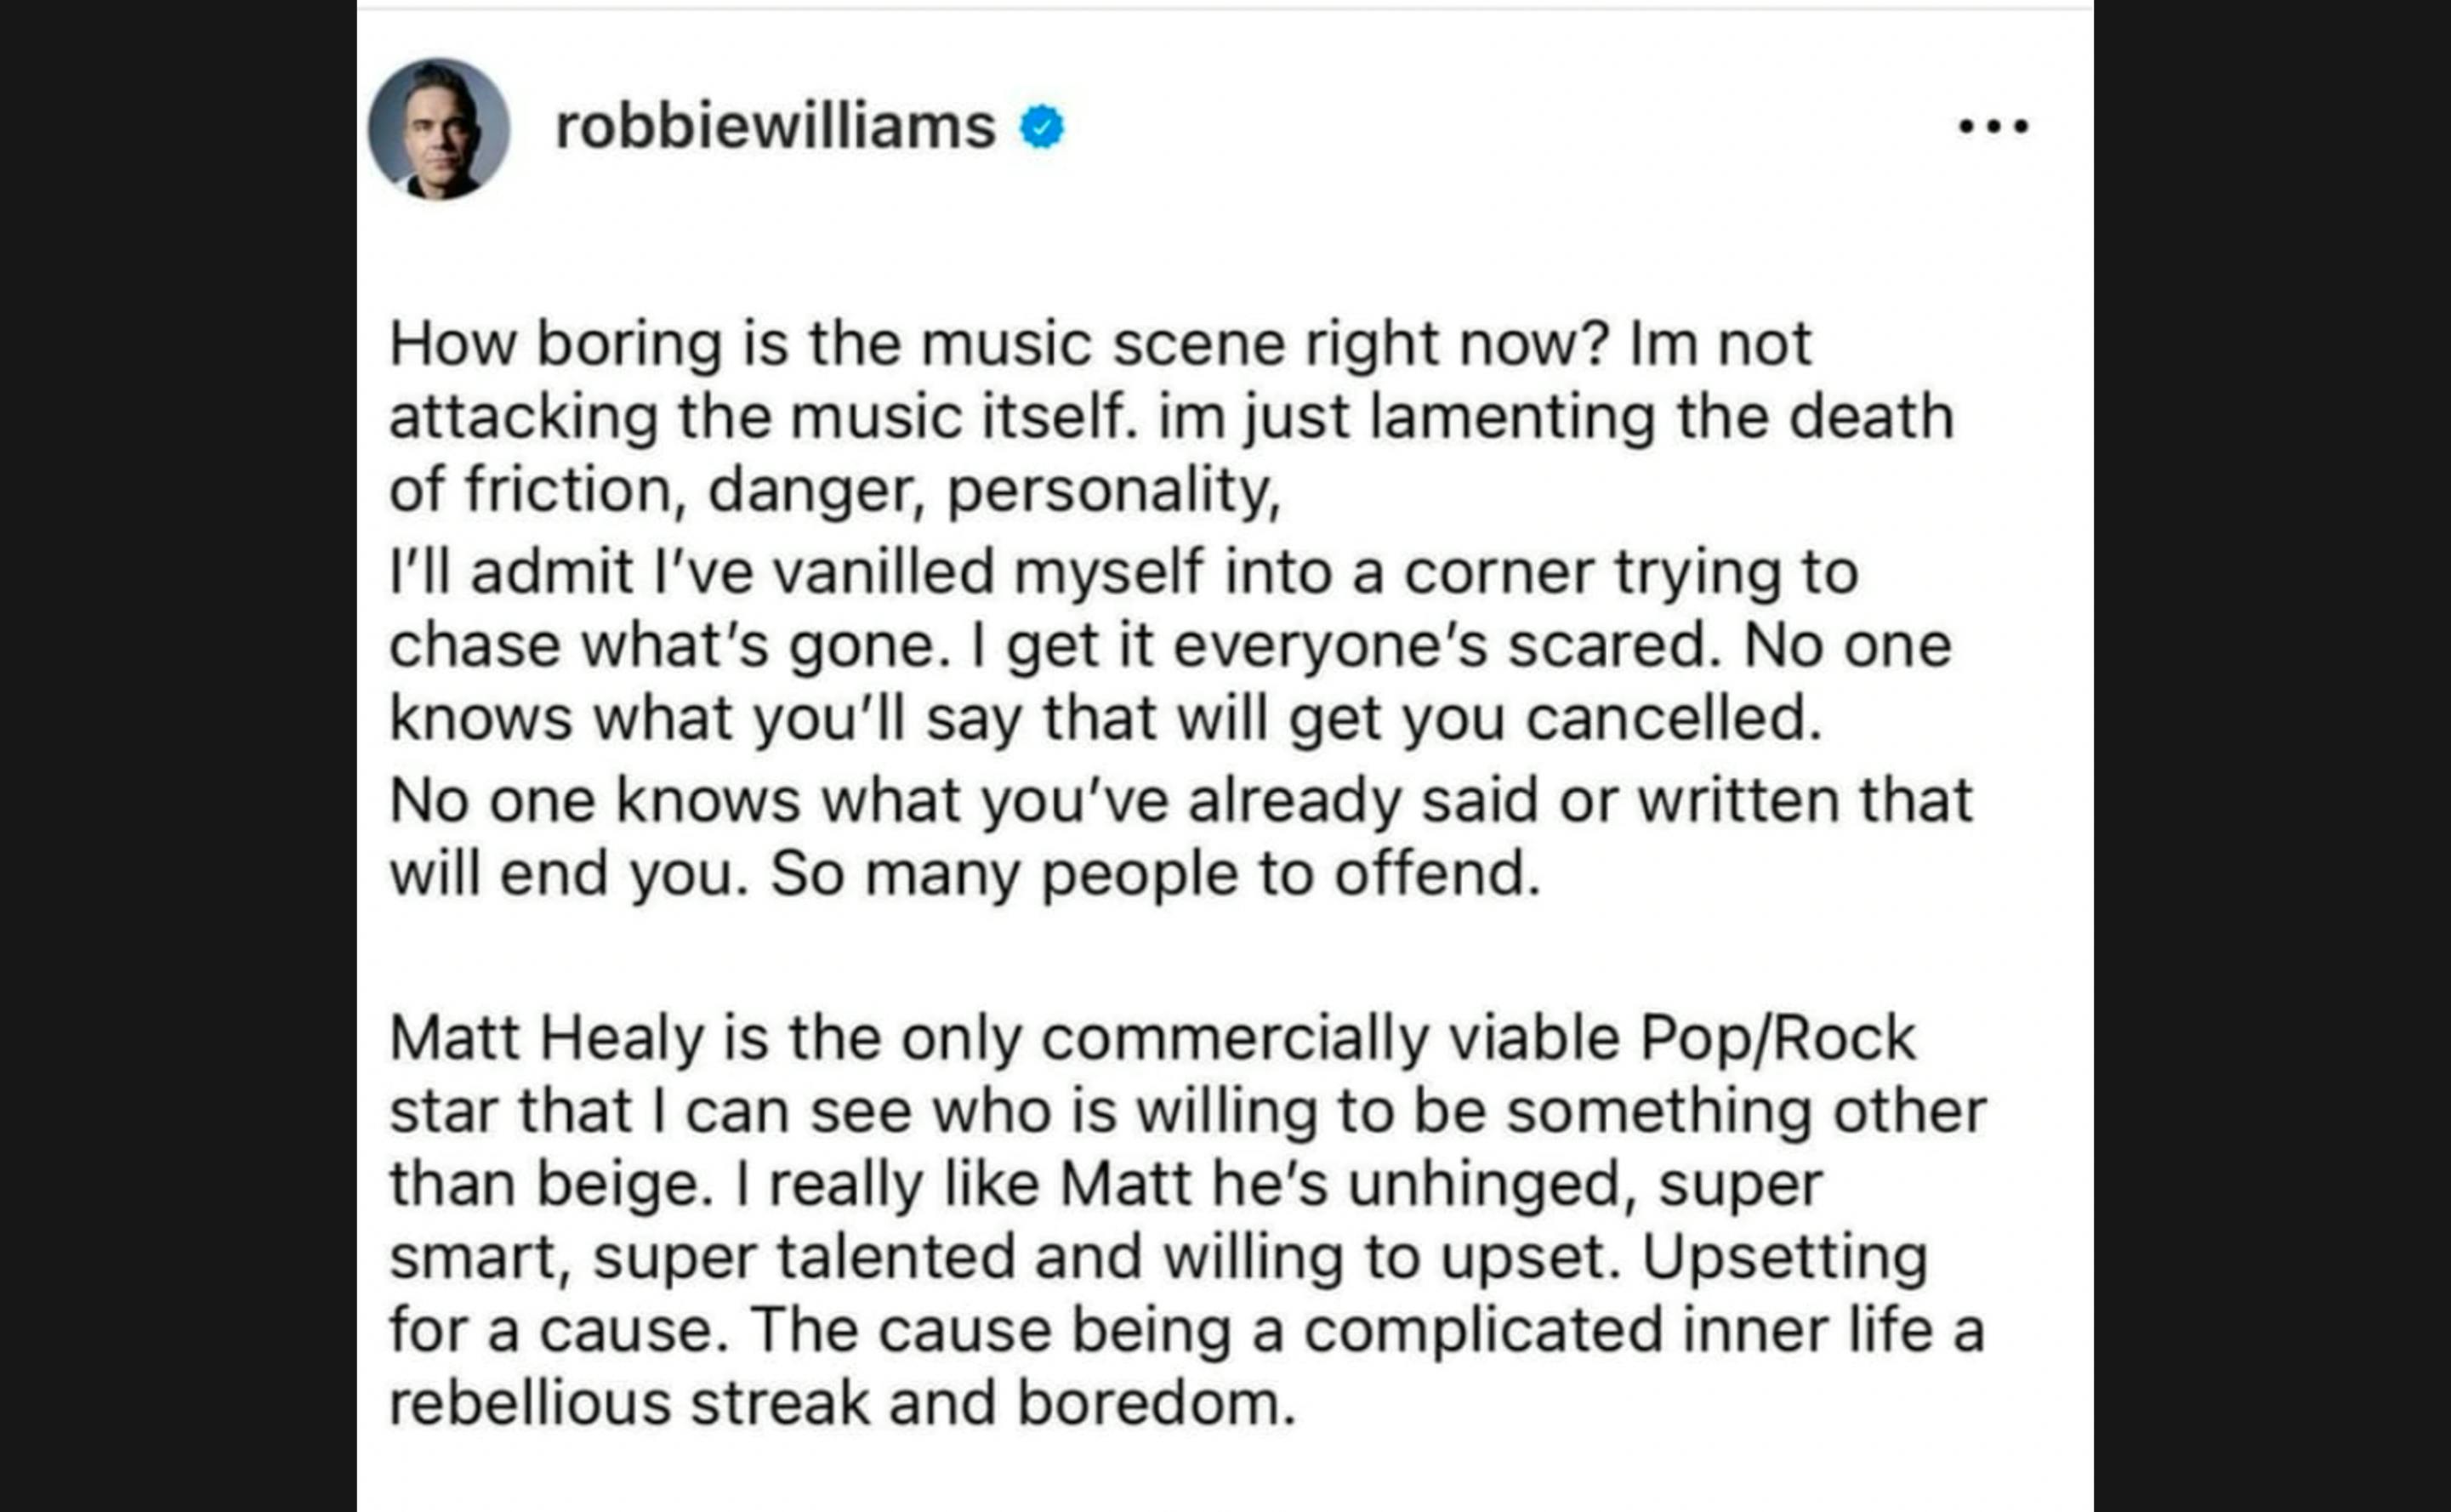 Der gelöschte Beitrag von Robbie Williams. Offenbar hat auch er keine Lust mehr anzuecken. 